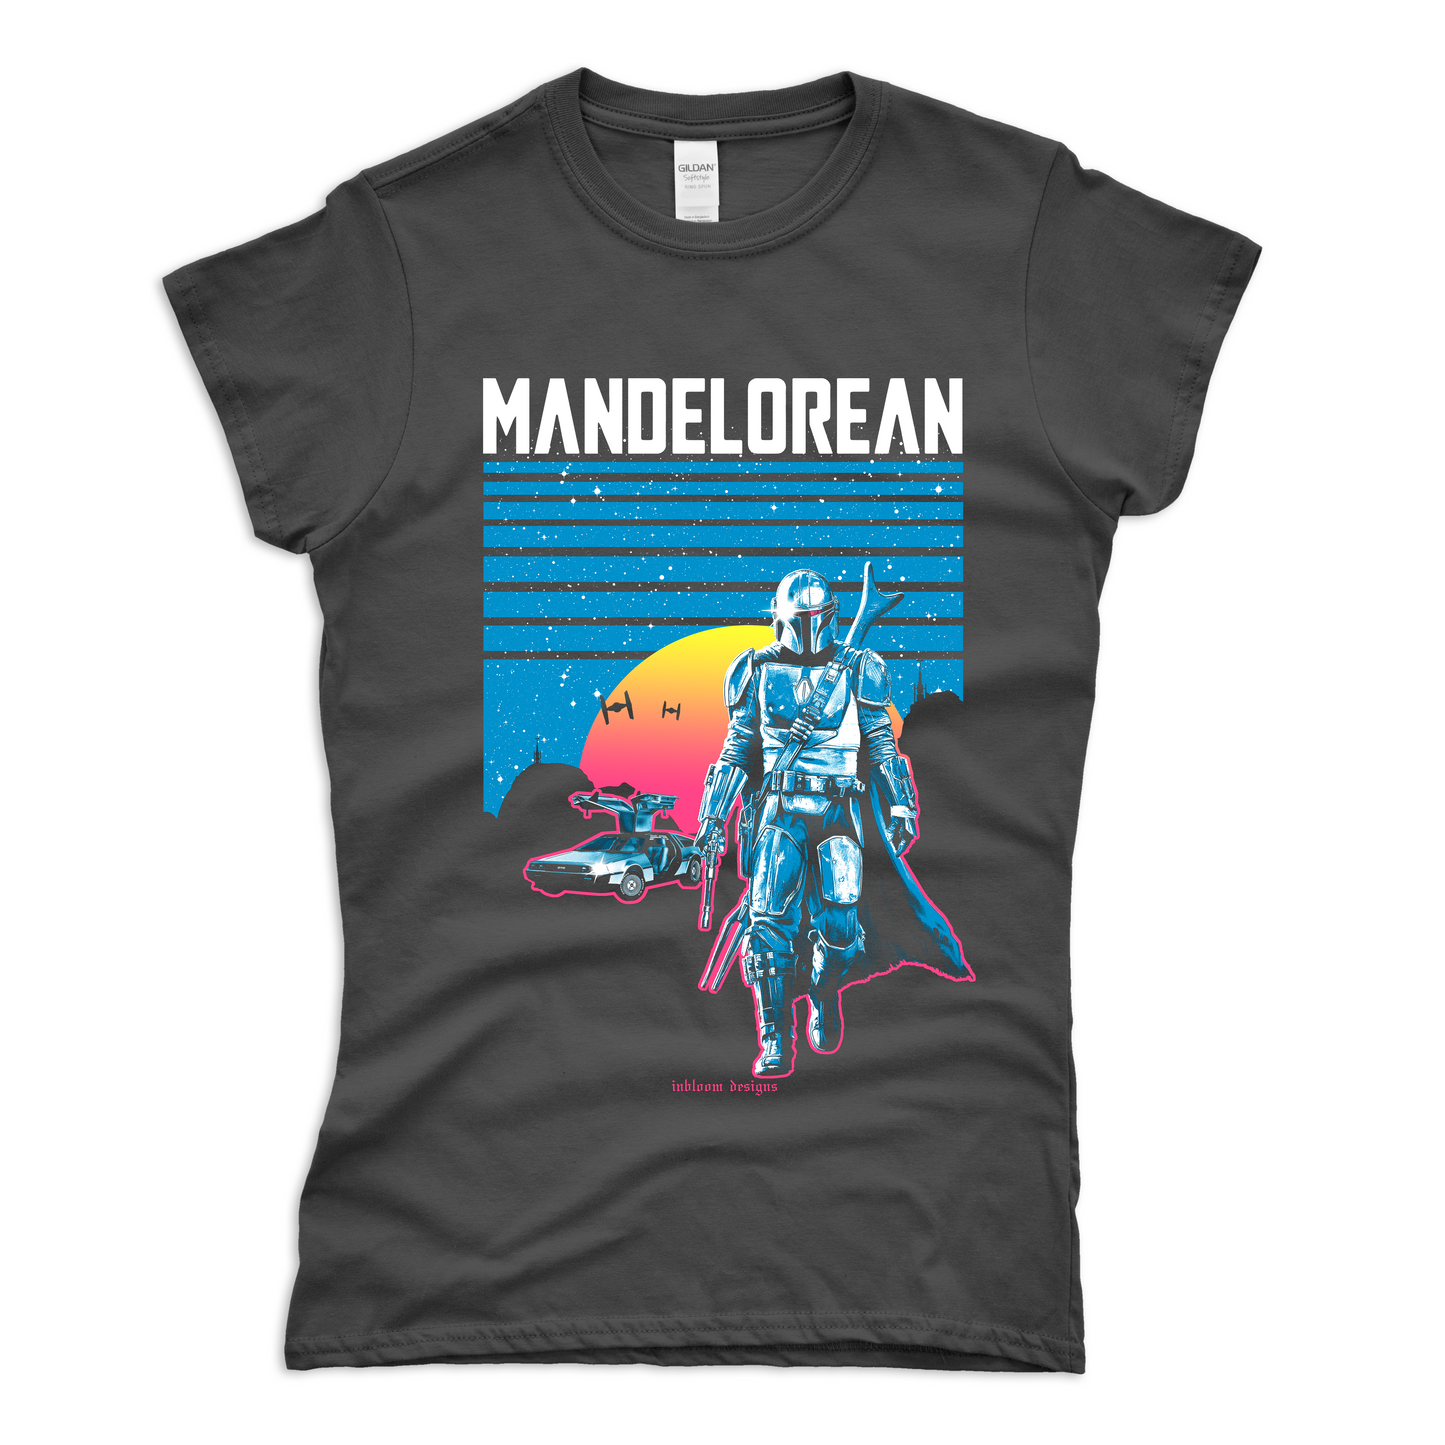 MANDELOREAN - Alex Inbloom Chica / S Camisas y tops